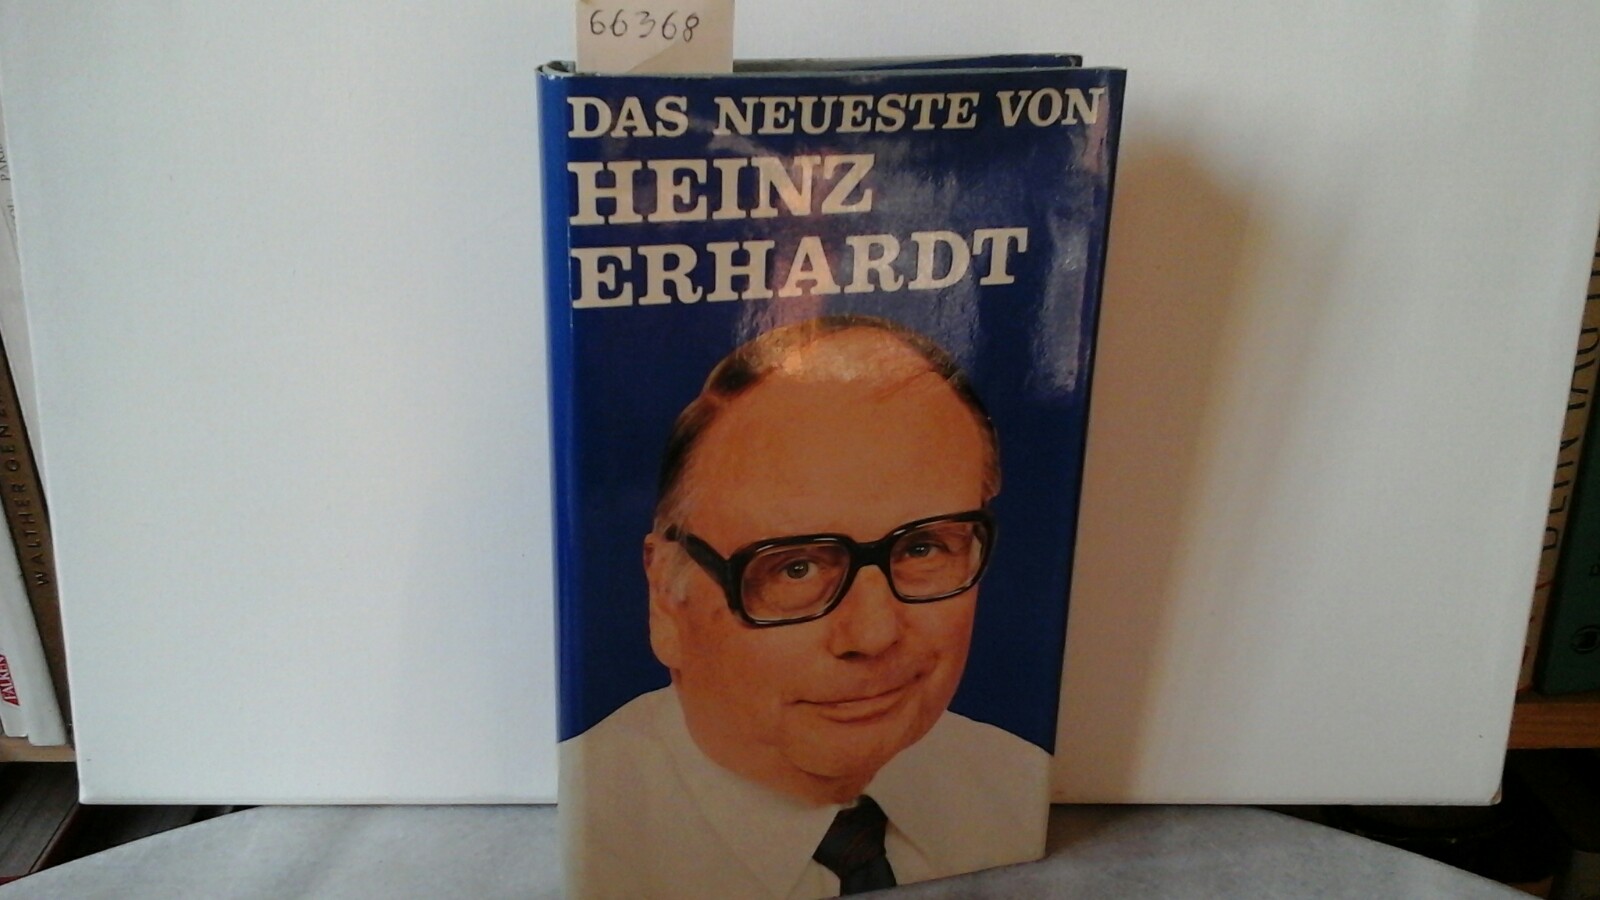 ERHARDT, HEINZ: Das neueste von Heinz Erhardt. 1. Auflage.